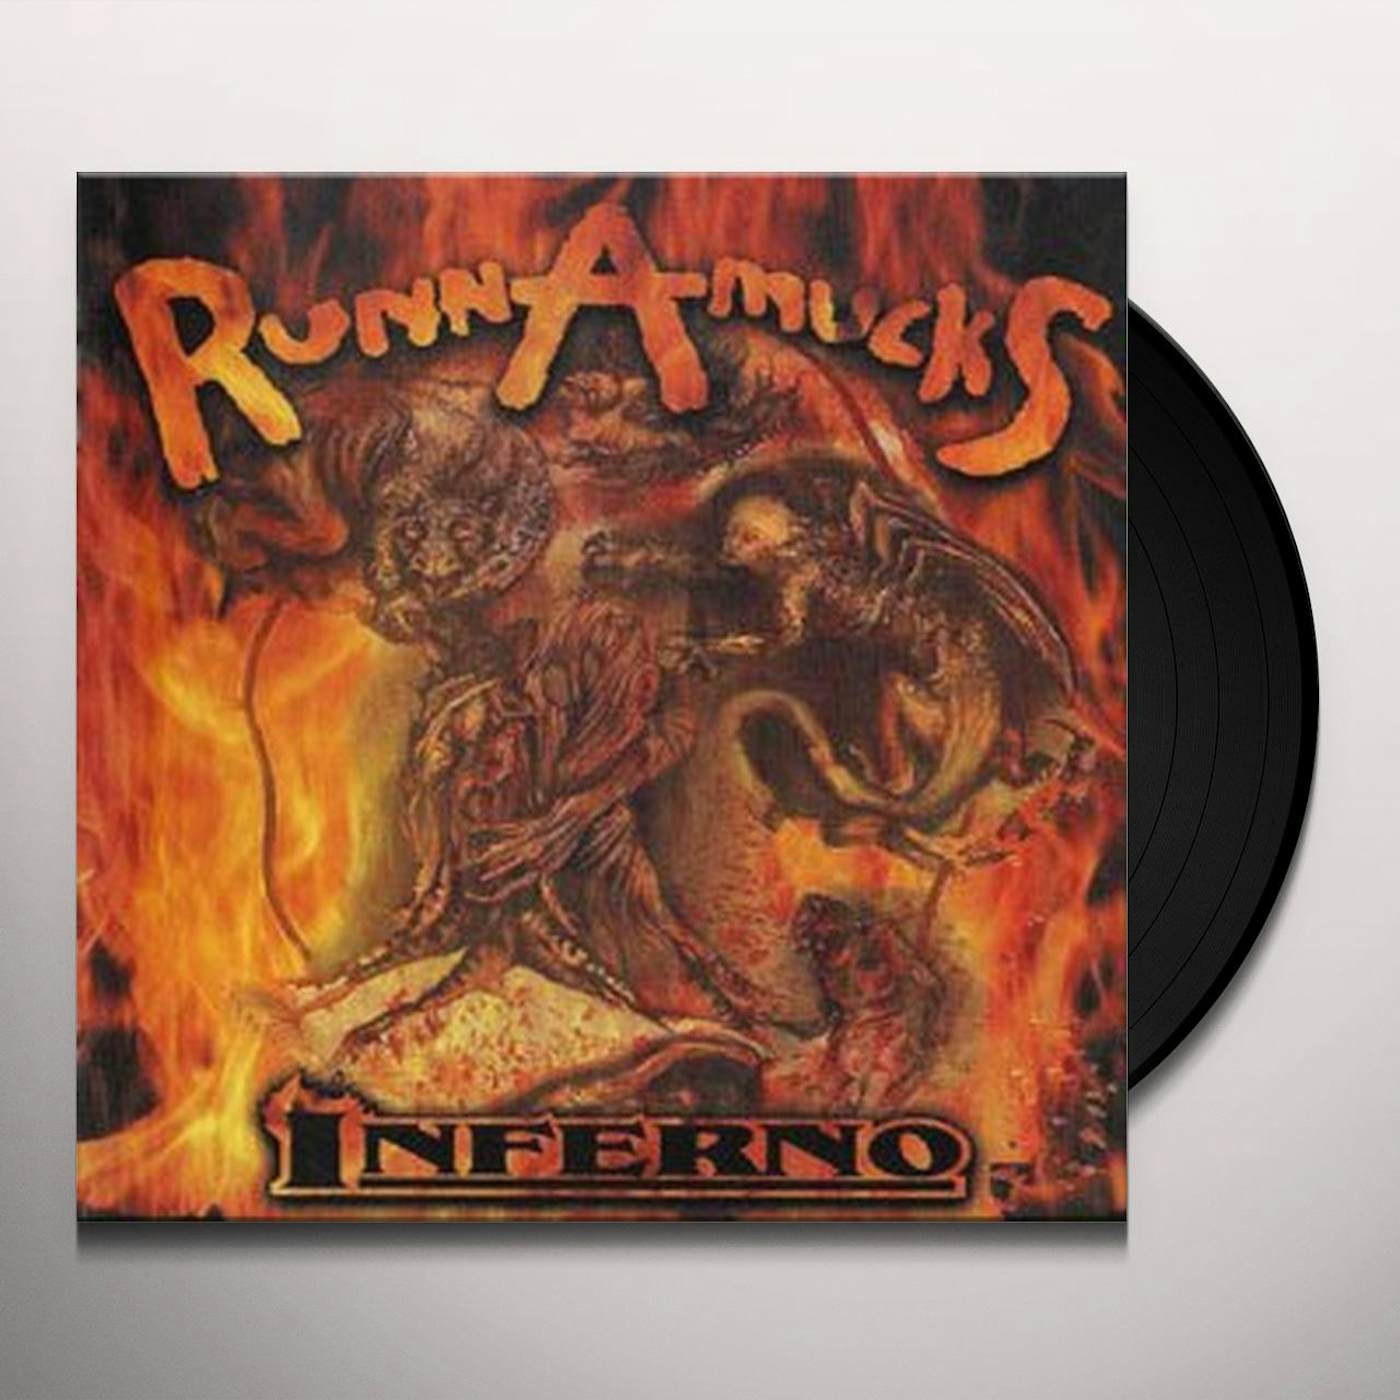 RunnAmuckS Inferno Vinyl Record